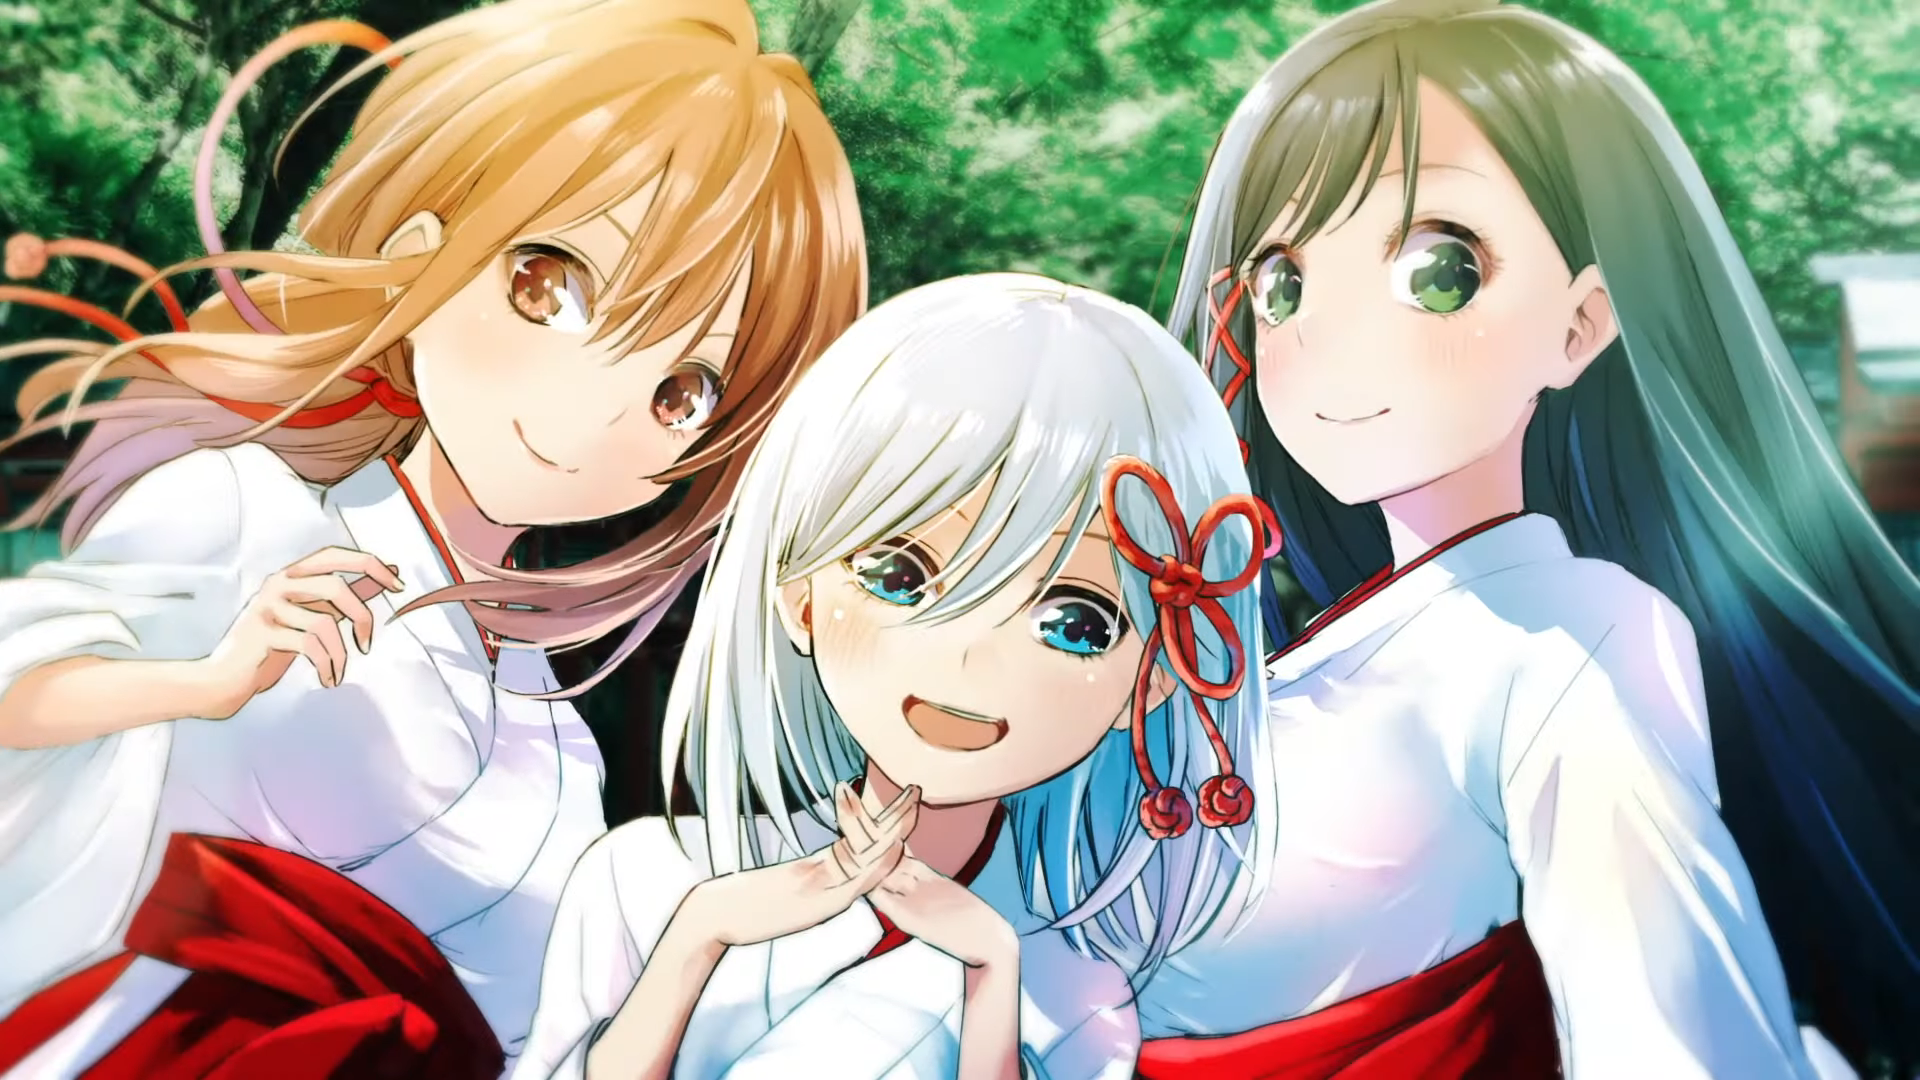 #Matchmaking der Amagami Household Anime Adaption angekündigt